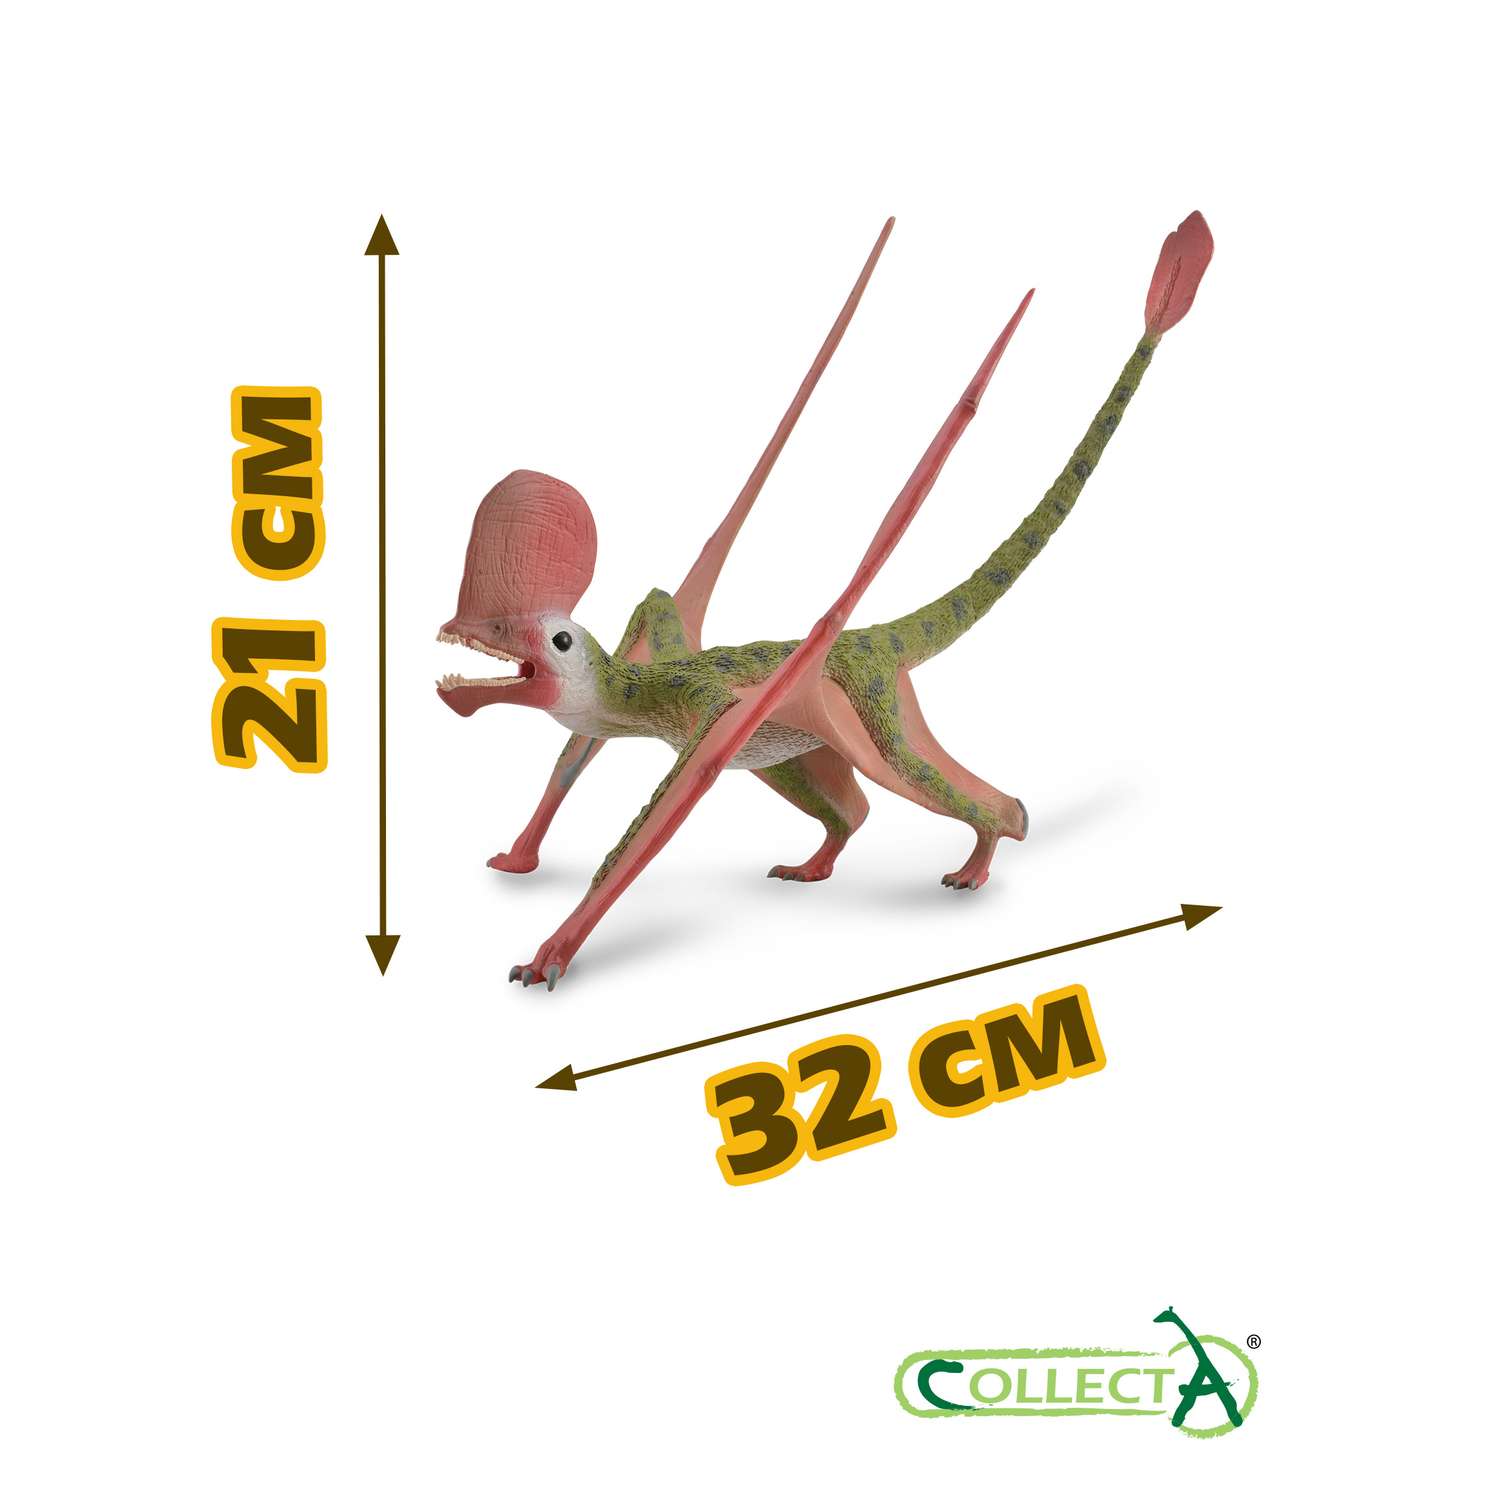 Фигурка динозавра Collecta Кавирамус с подвижной челюстью 1:2 - фото 2